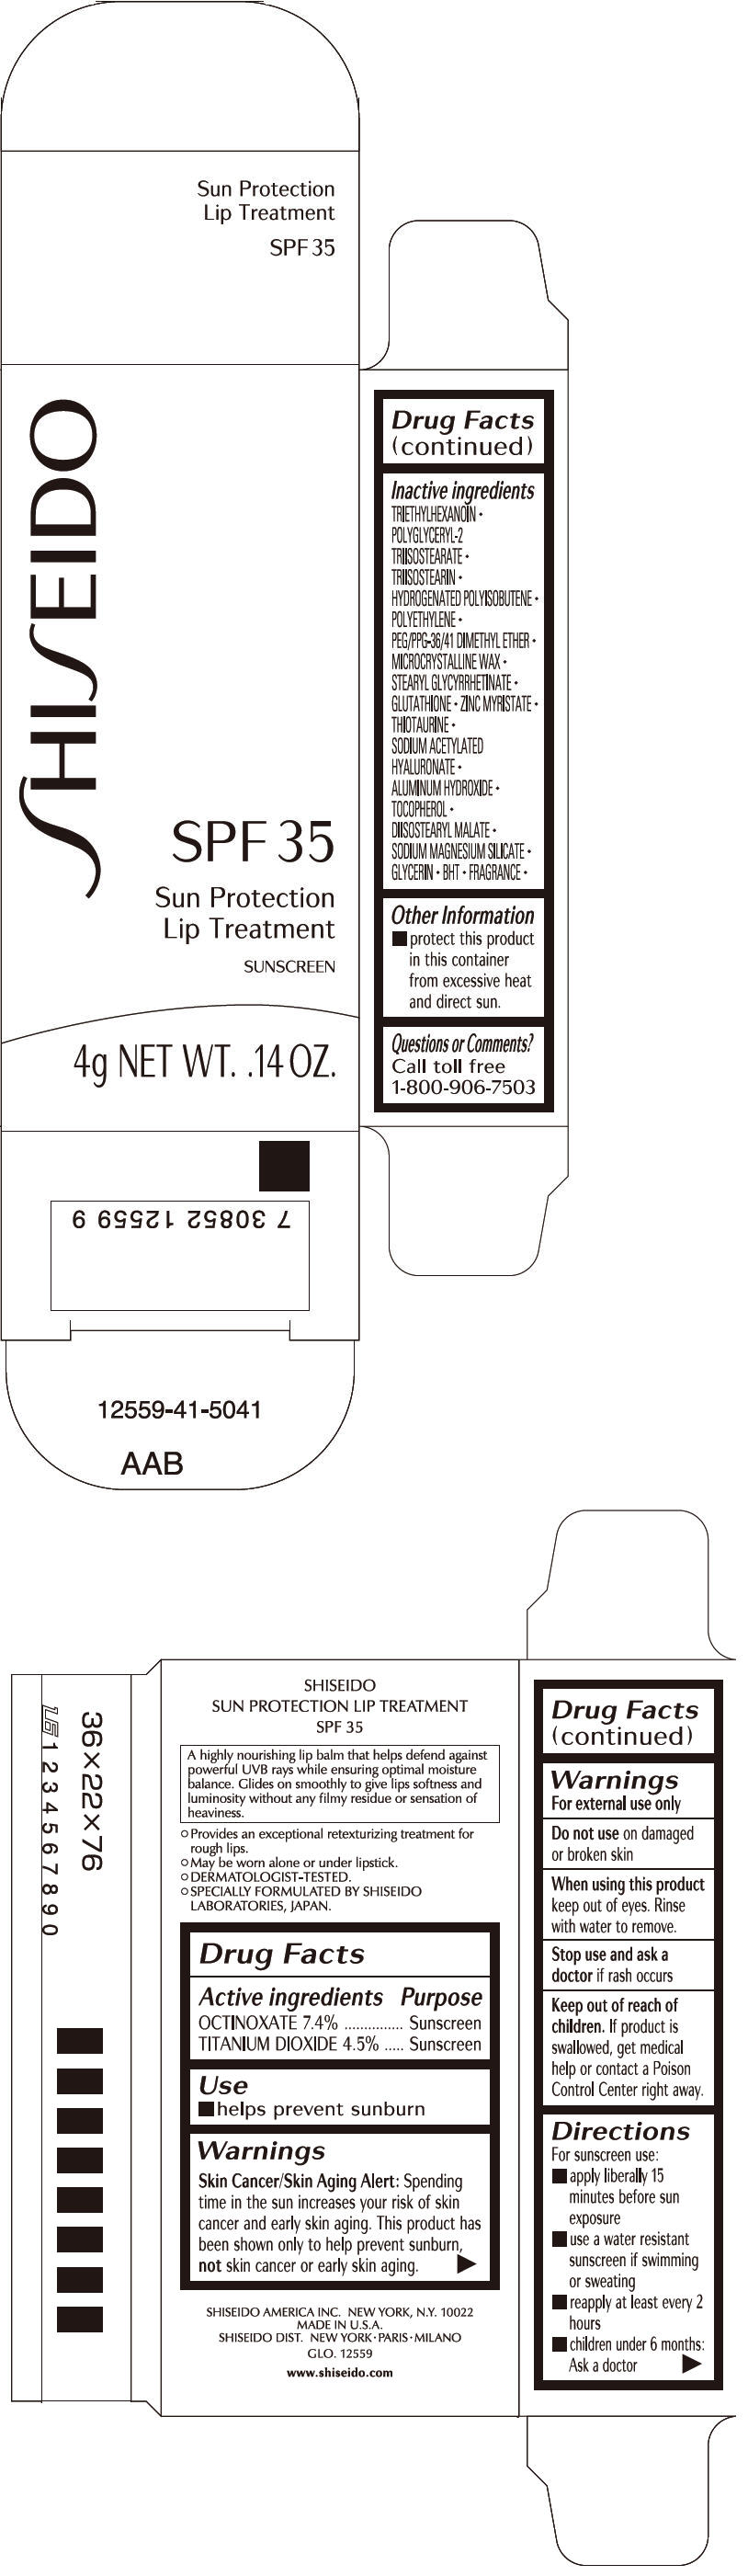 Principal Display Panel - 4g Cartridge Carton